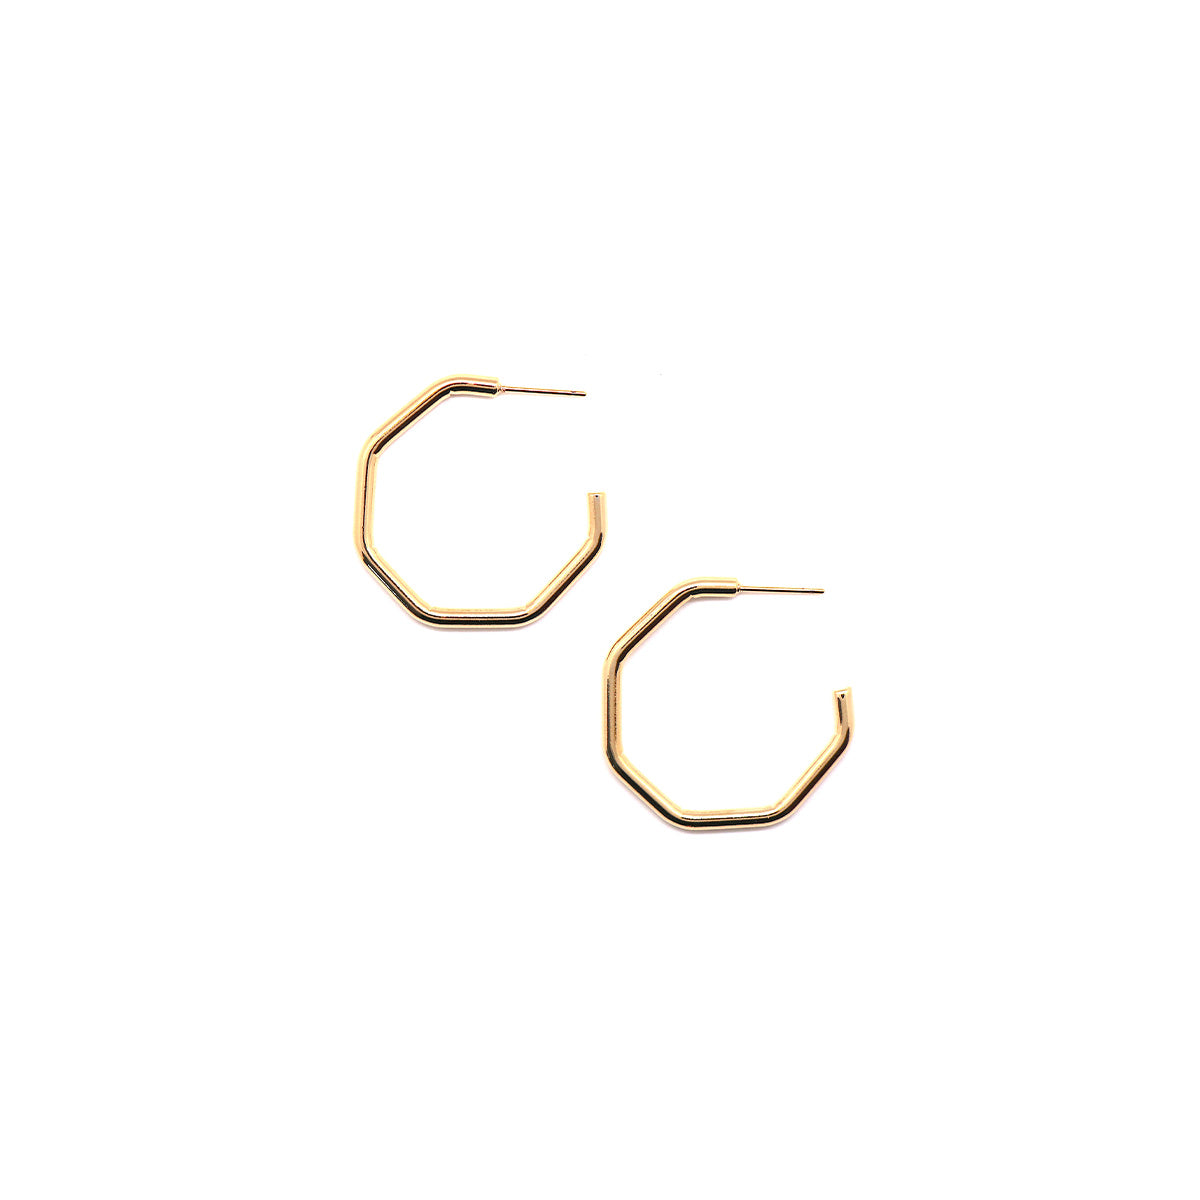 1" gold octagon hoop earrings